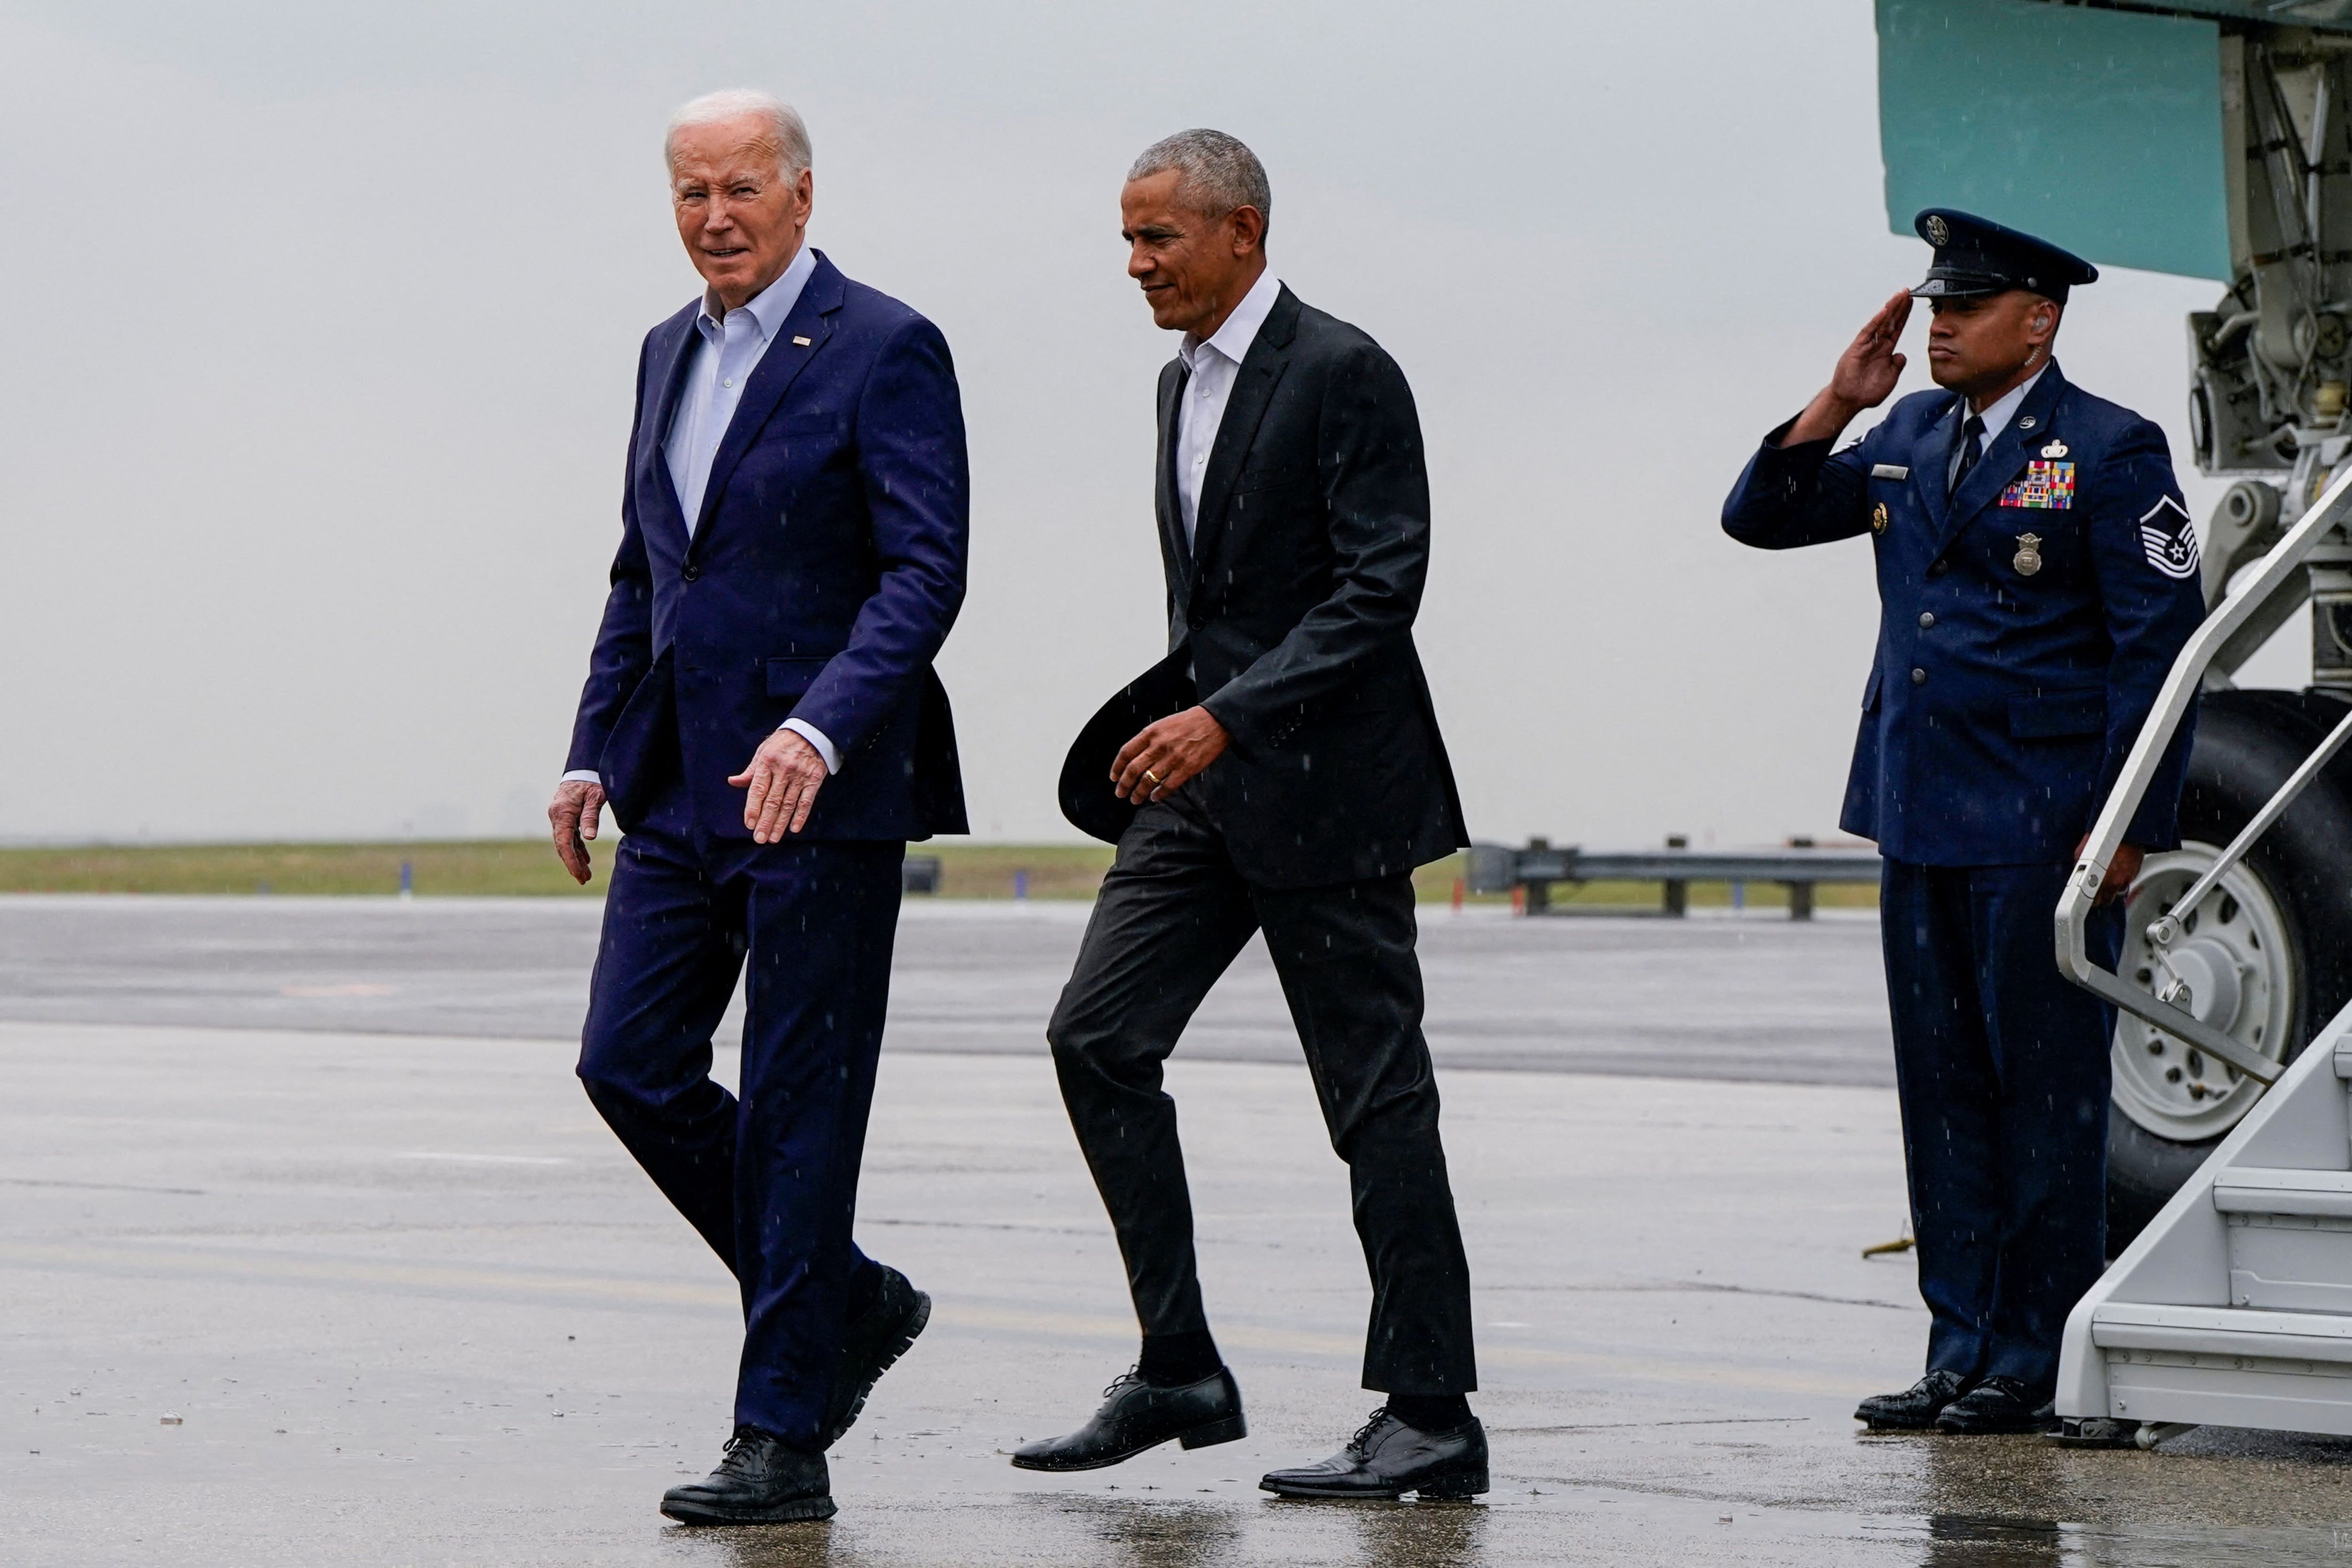 Joe Biden recauda 25 millones de dólares, cifra récord de un evento político, en un acto de campaña en Nueva York